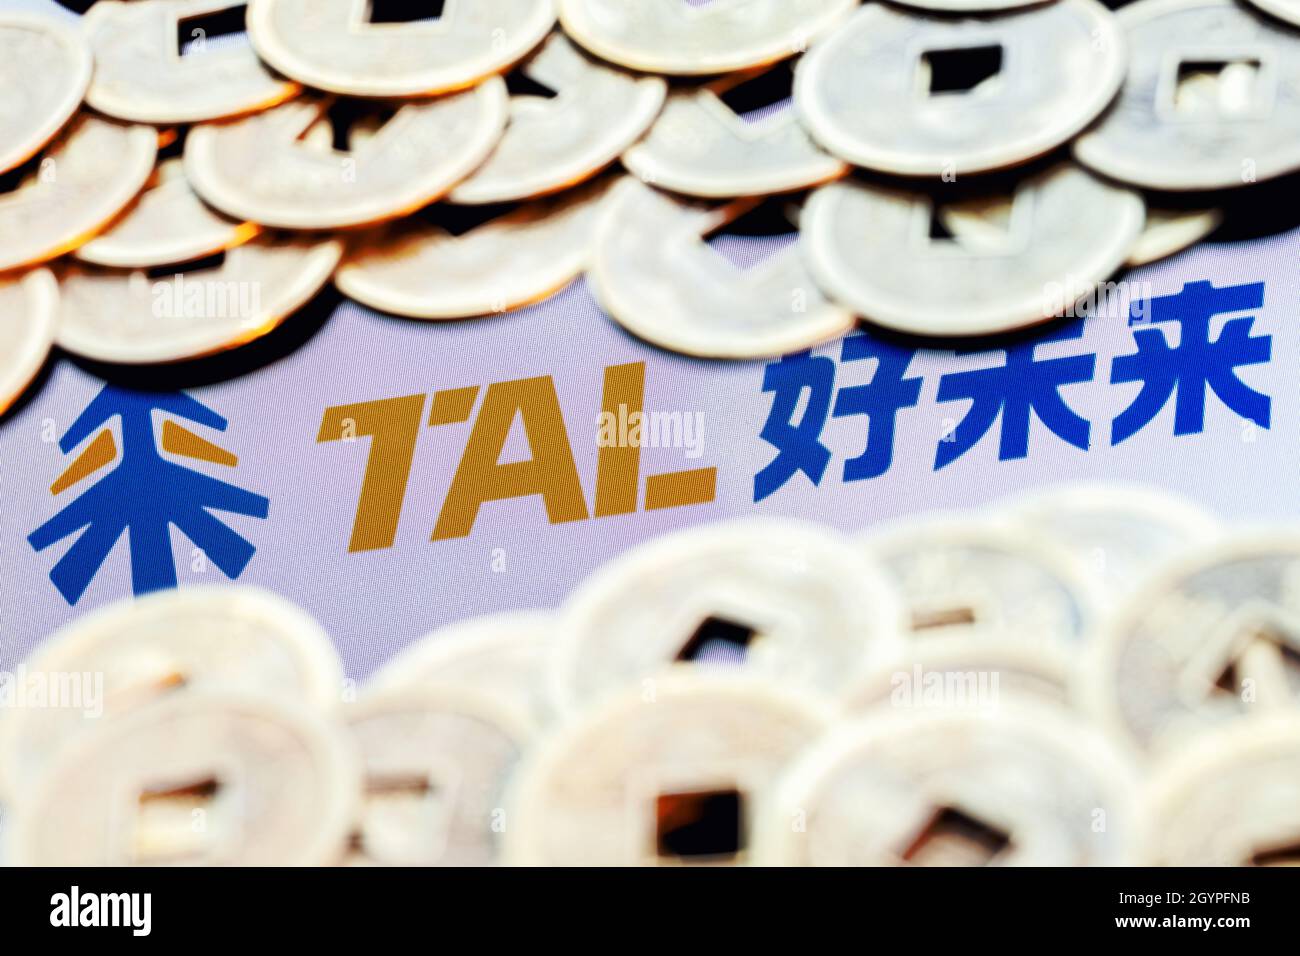 TAL Education Group ist ein chinesisches Unternehmen, das Schulabklärungsunterricht für Schüler anbietet. TAL-Logo, umgeben von verschwommenen feng Shui-Münzen. Stockfoto